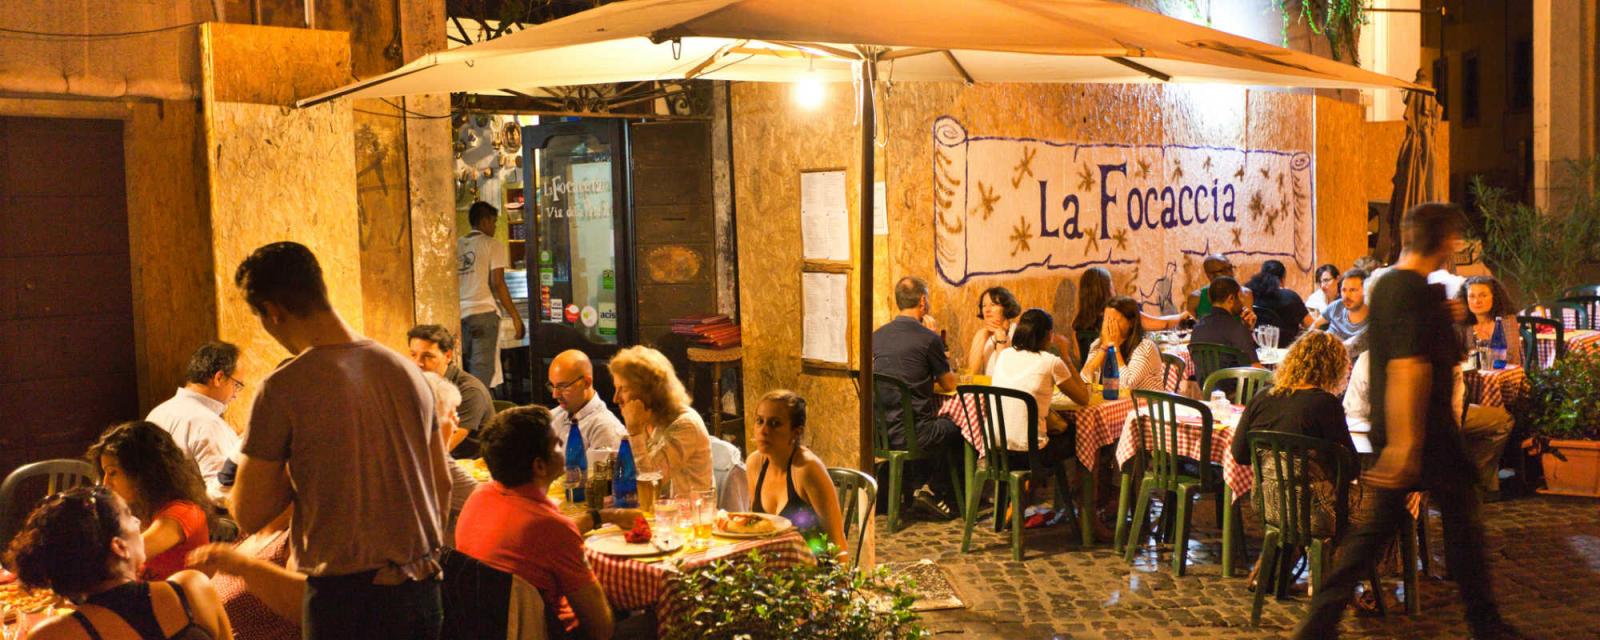 De leukste eettentjes in Rome | CityZapper 